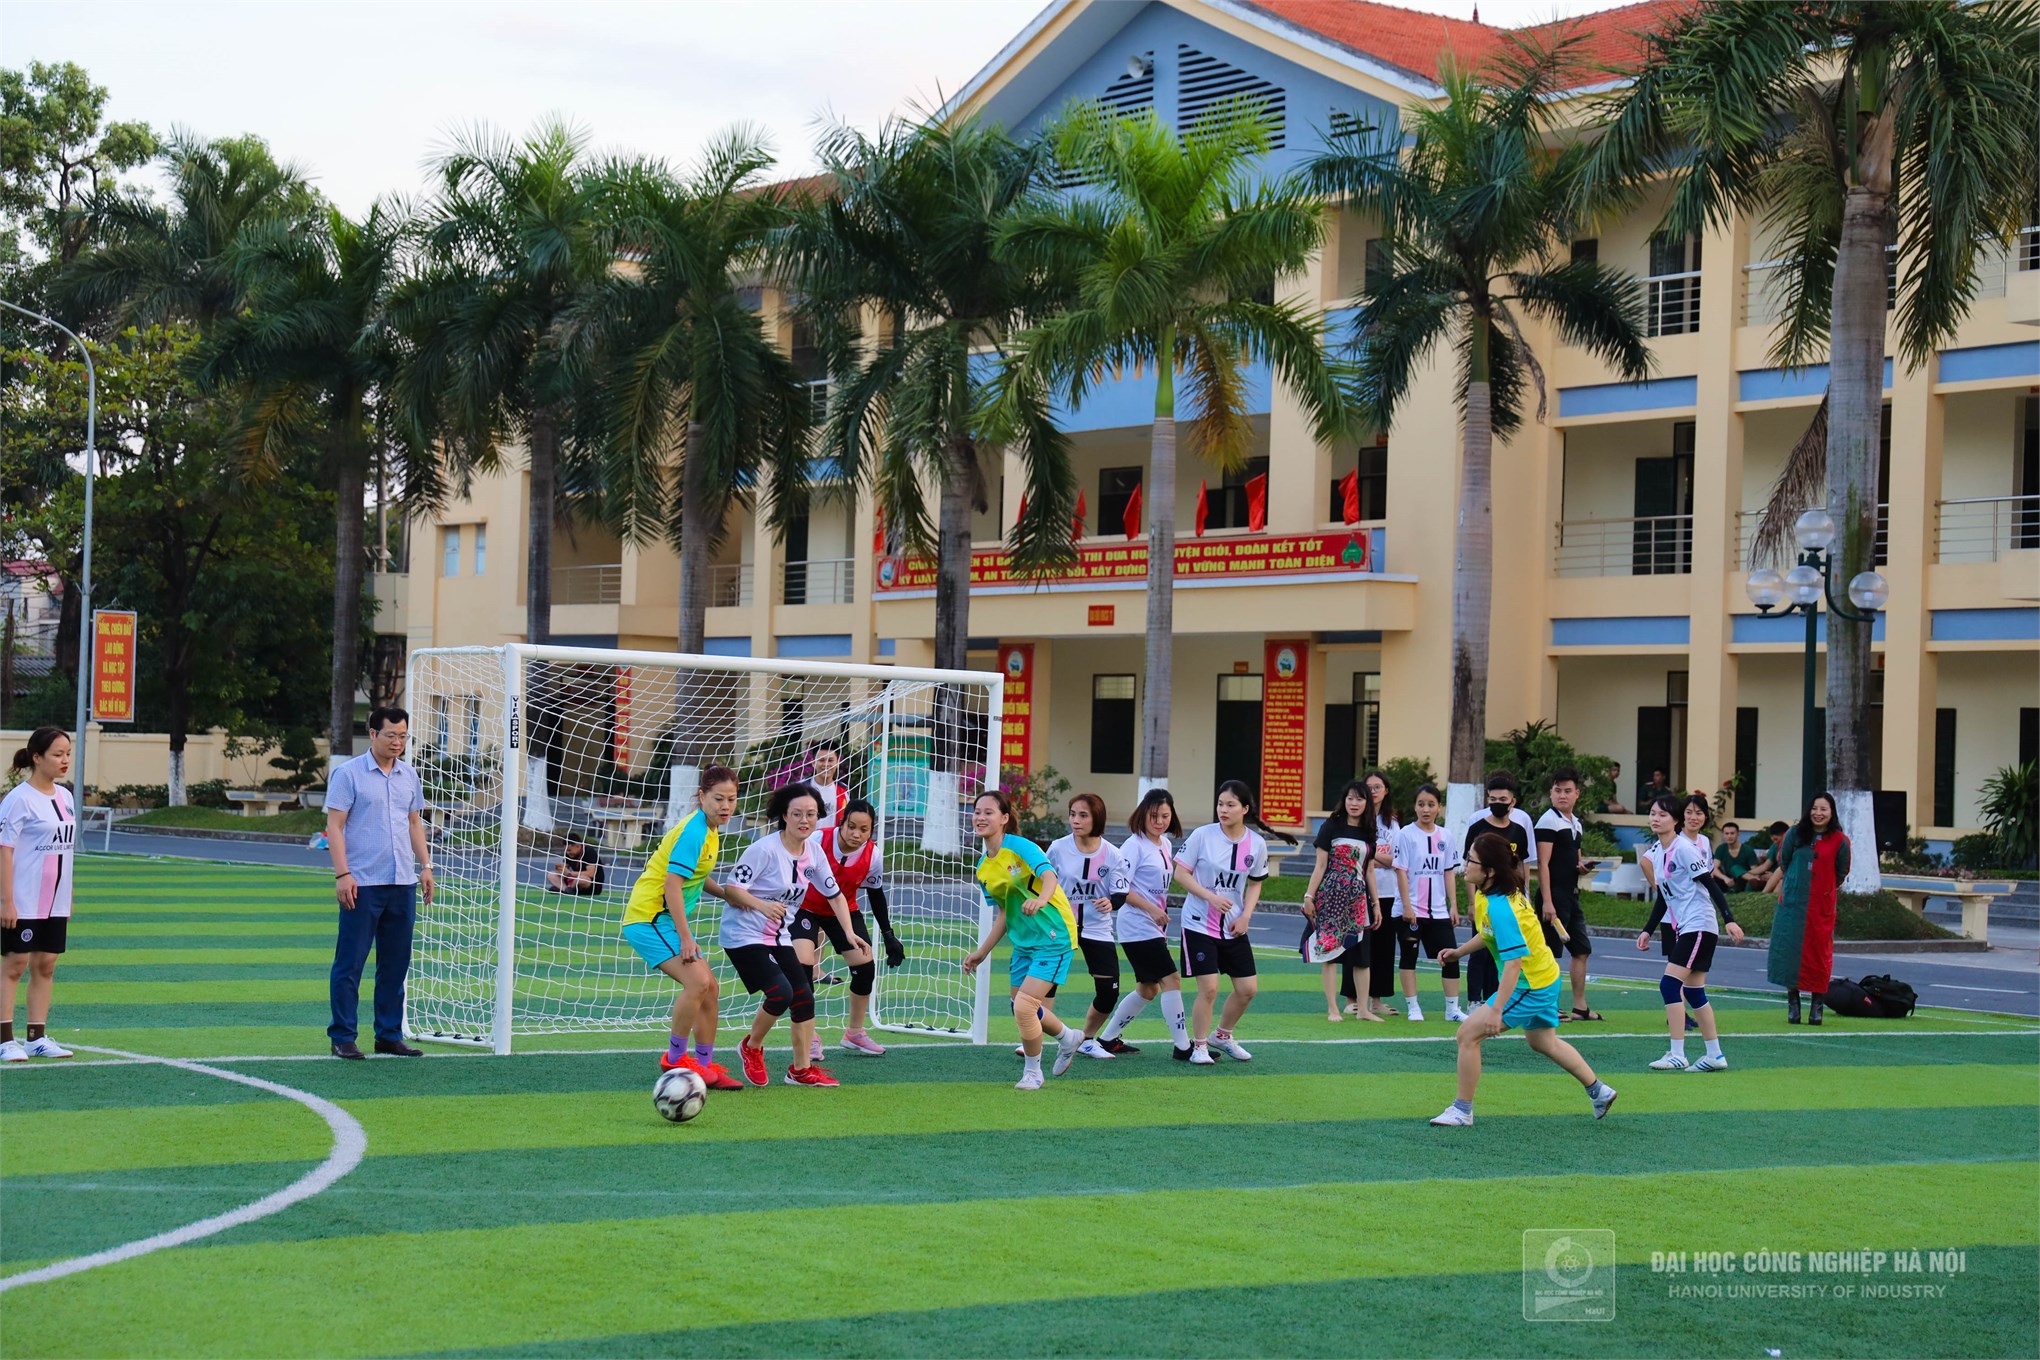 Liên quân Cơ khí-Tổ chức Hành chính-Hỗ trợ sinh viên-Truyền thông vô địch tại Giải bóng đá nam Viên chức, Người lao động năm 2022